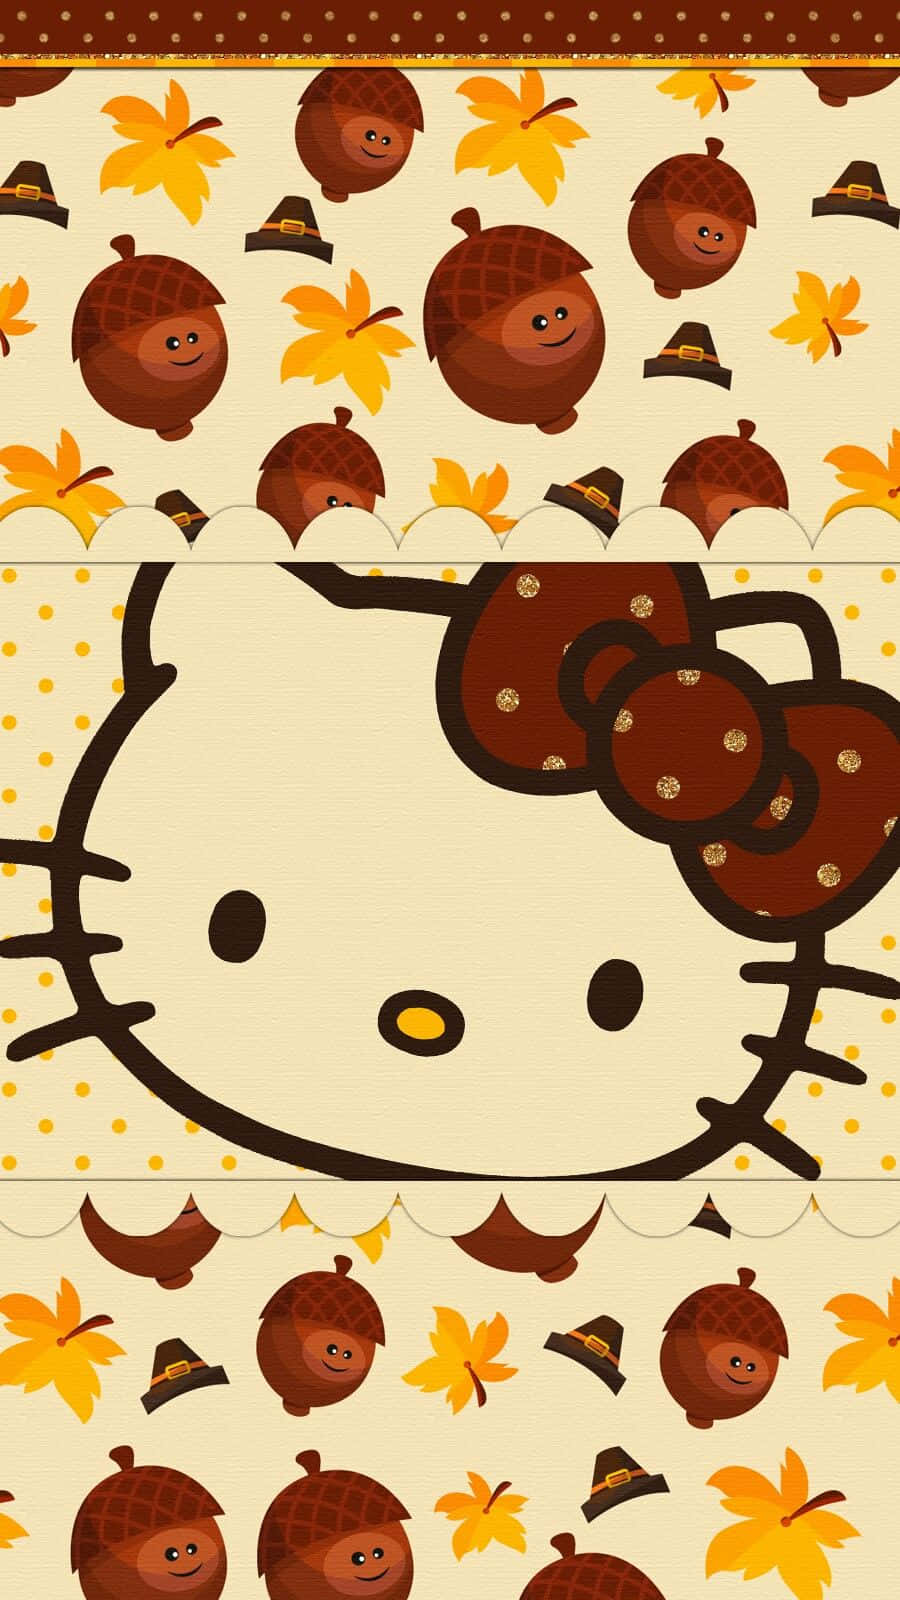 Celebreo Dia De Ação De Graças Com A Hello Kitty Em Seu Papel De Parede De Computador Ou Celular. Papel de Parede